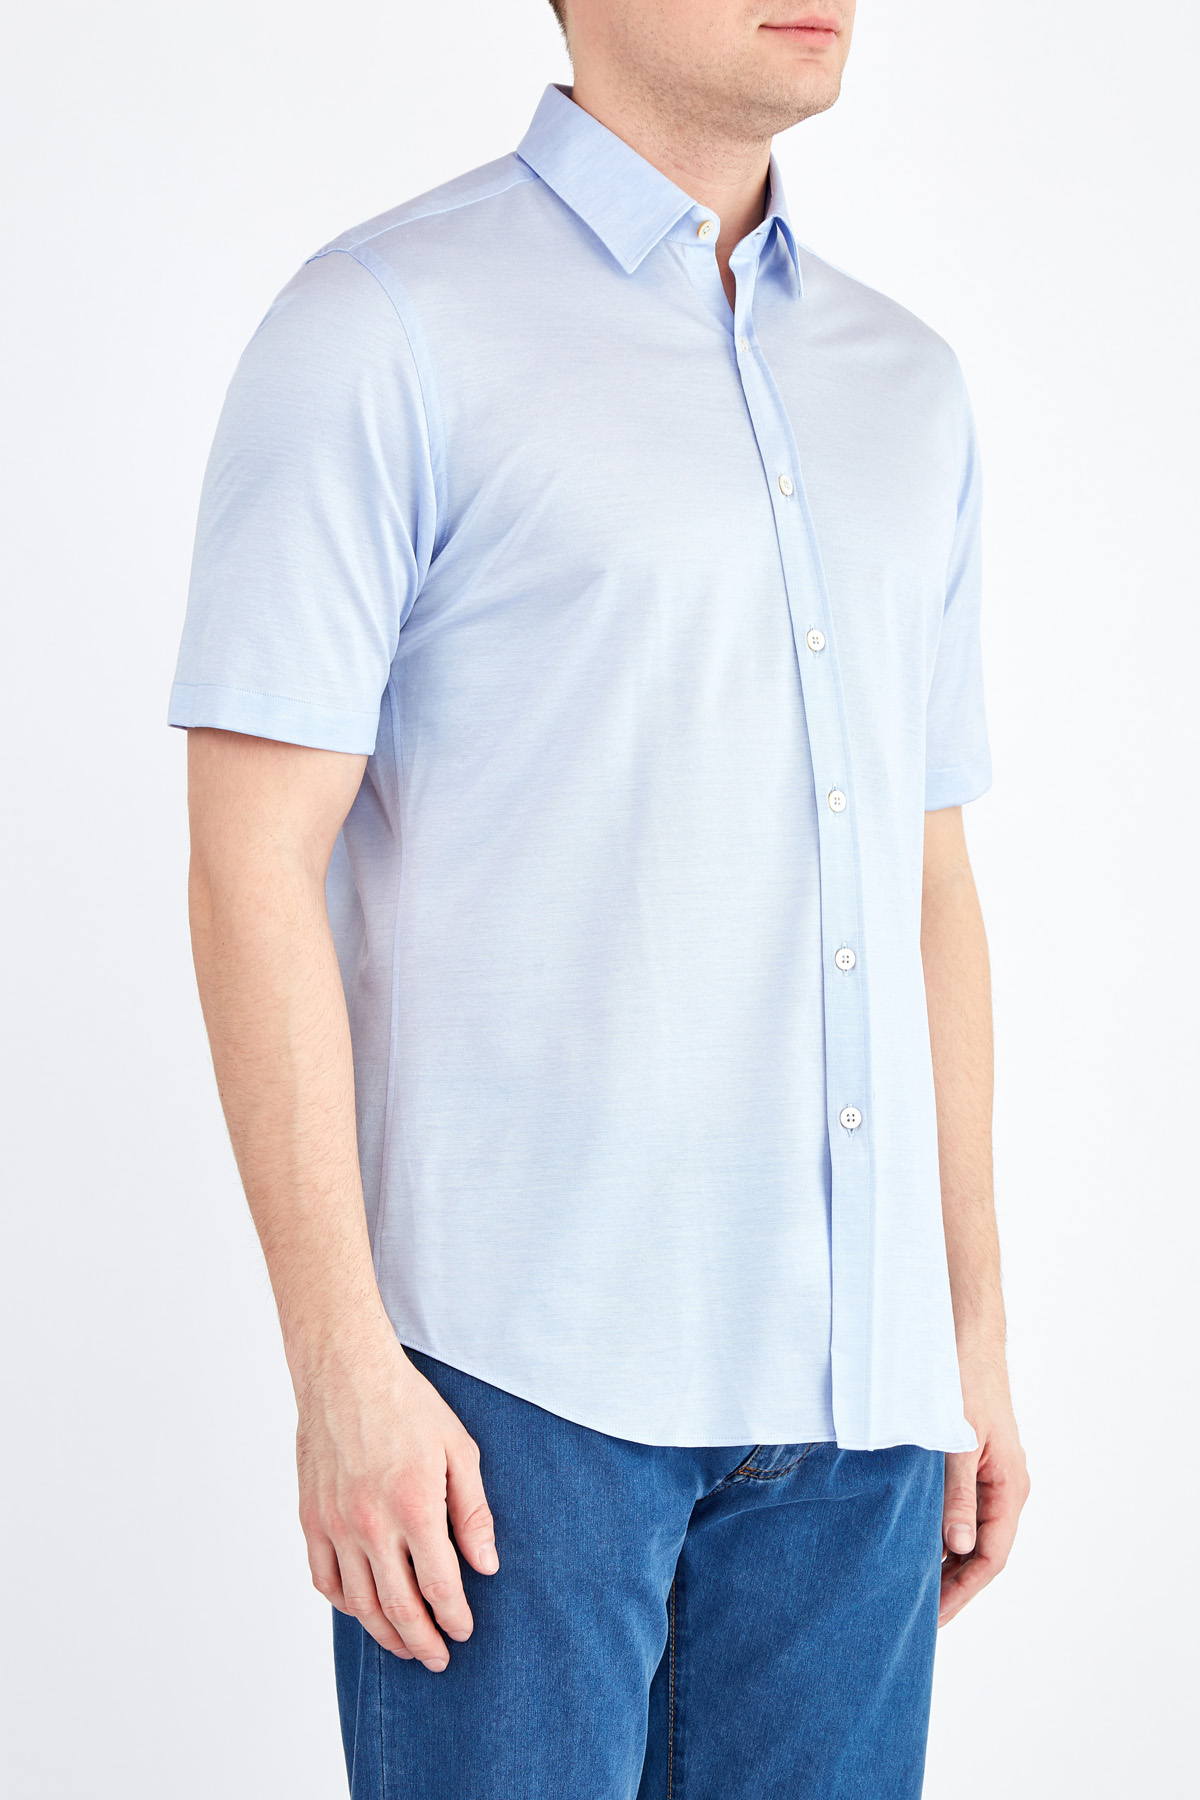 Базовая голубая рубашка с коротким рукавом из пике CANALI, цвет голубой, размер 46 - фото 3